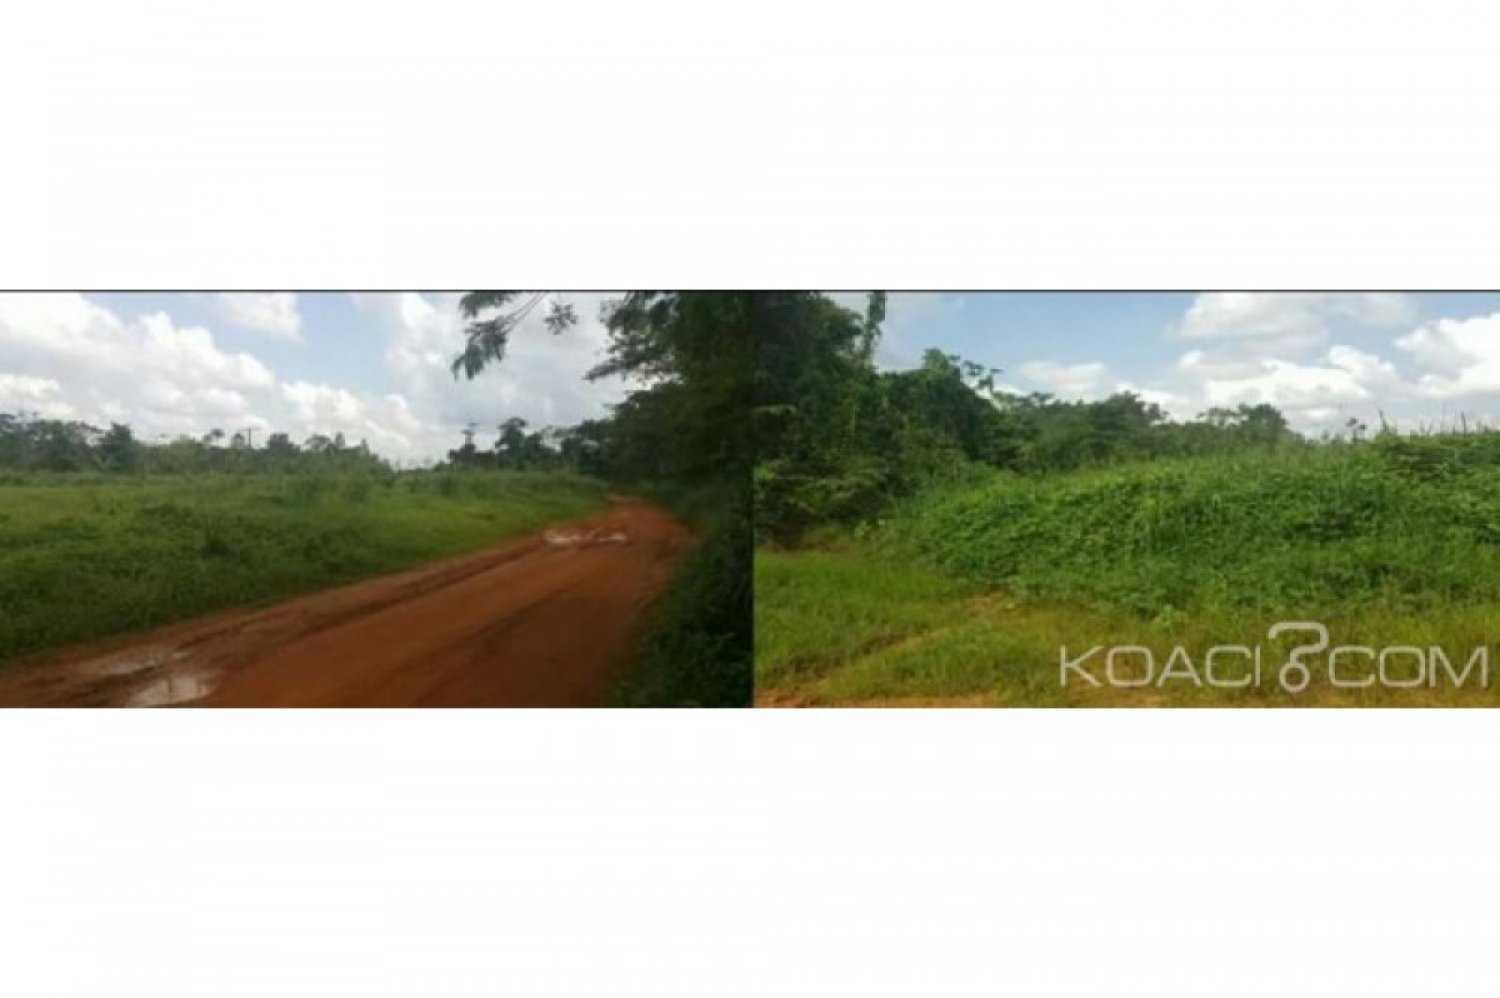 Côte d'Ivoire: Oglwapo, accusé par des villageois de vente illicite de terrains, le sous-préfet reçoit le soutien d'un collectif de jeunes qui dément les allégations avancées